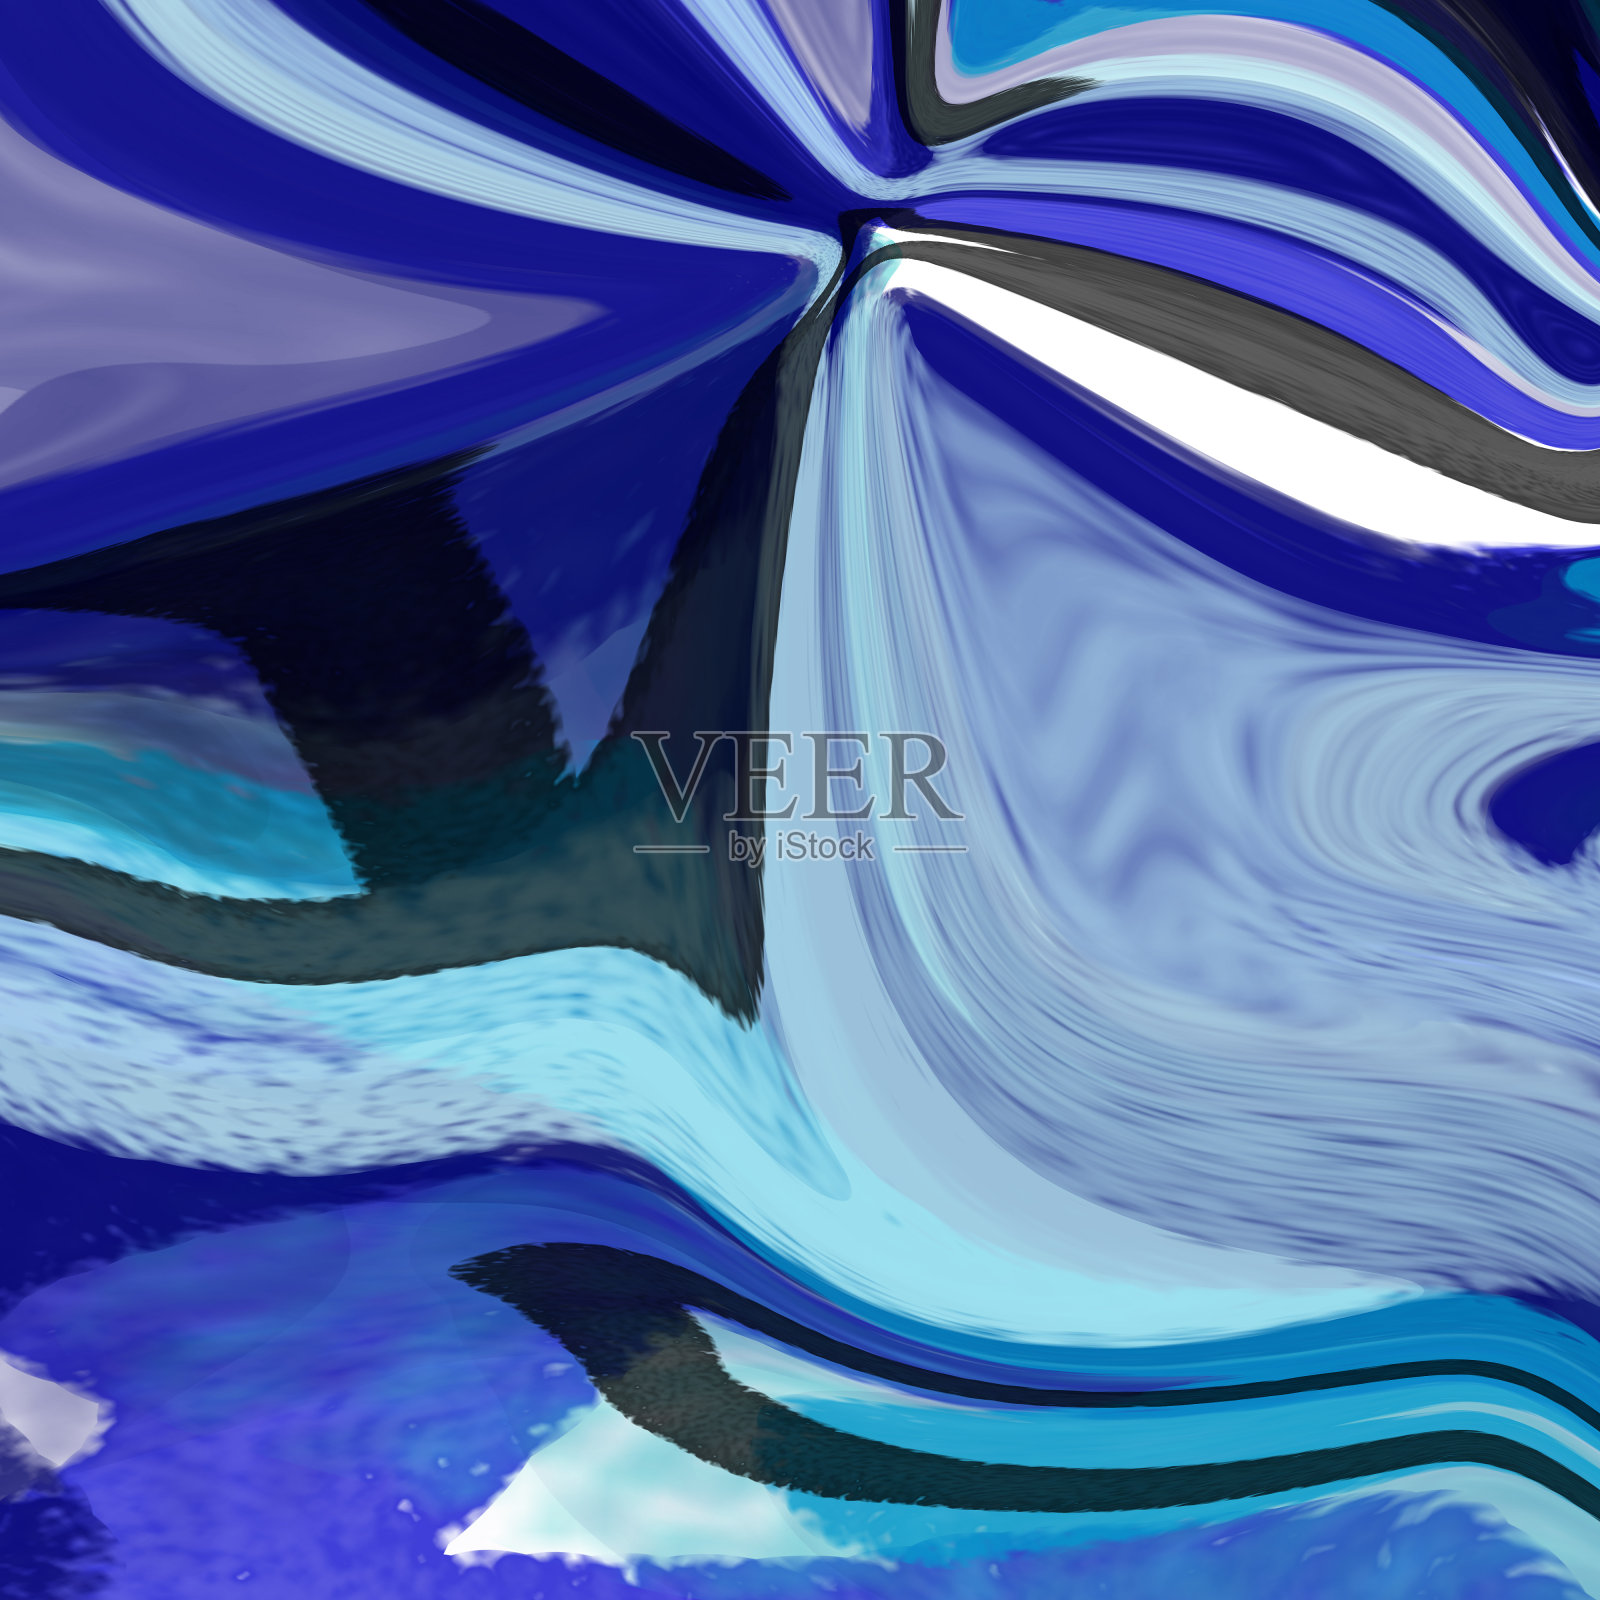 类似水的液体抽象背景插画图片素材